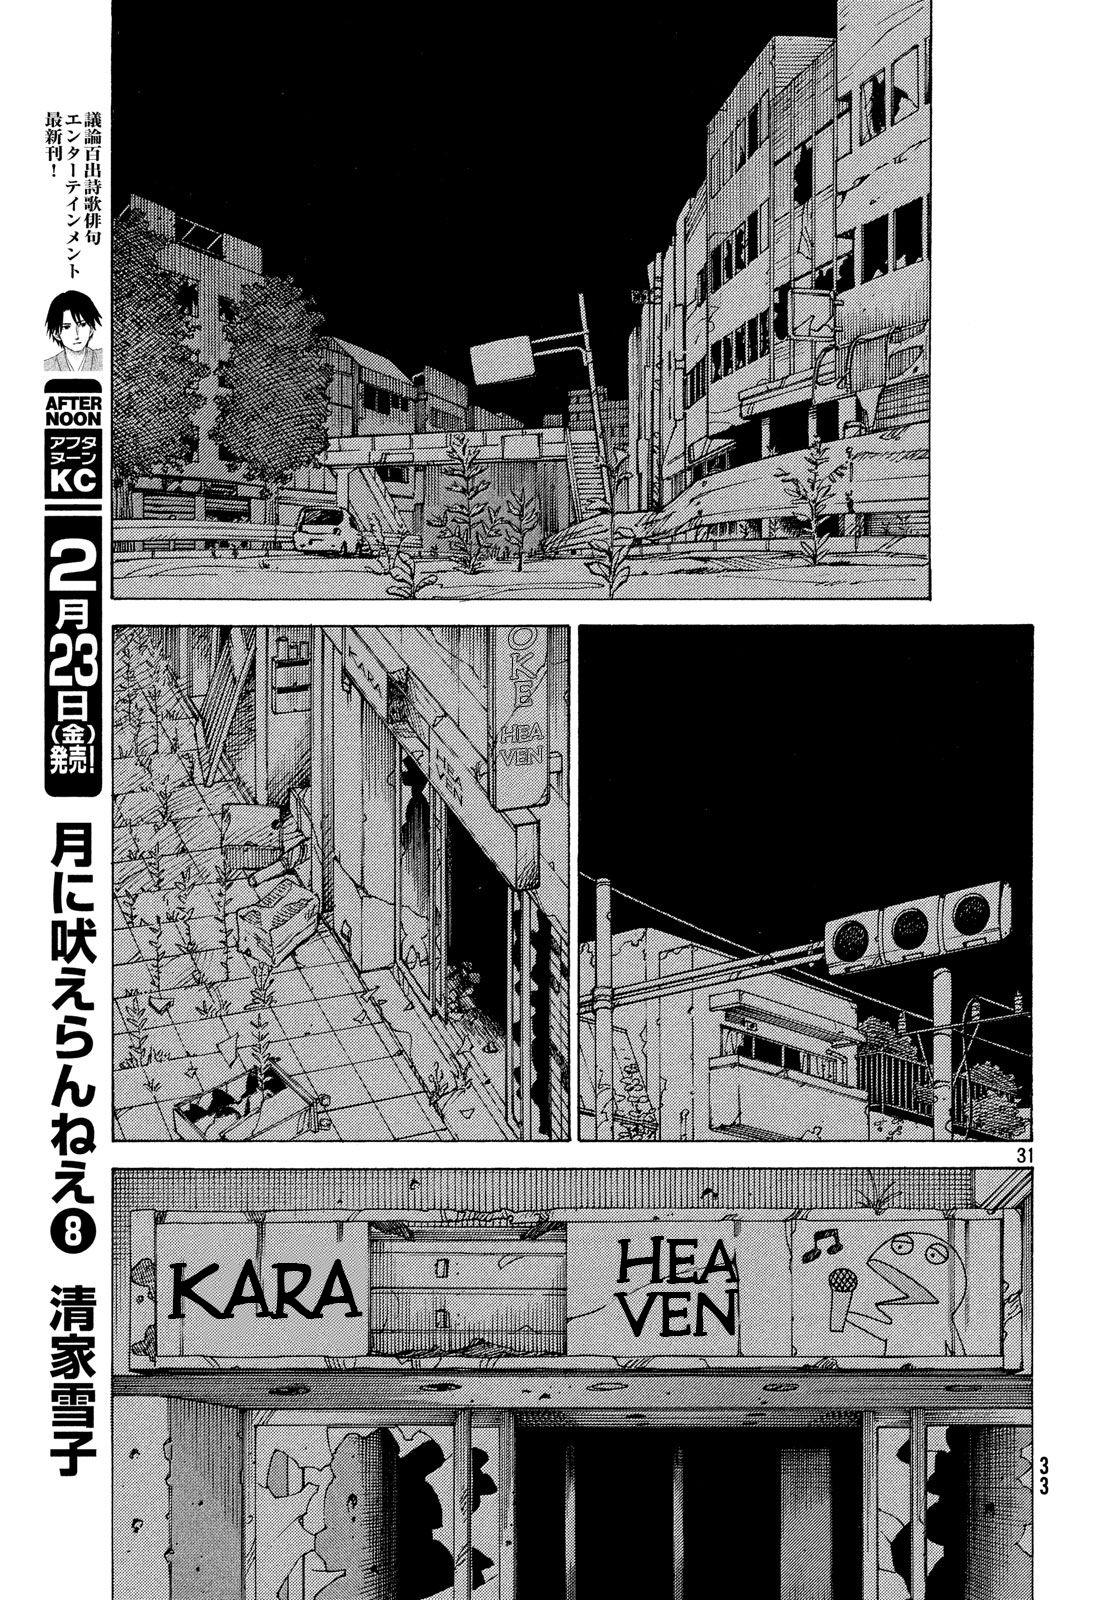 Tengoku Daimakyou, Chapter 1 - Tokio - Tengoku Daimakyou Manga Online